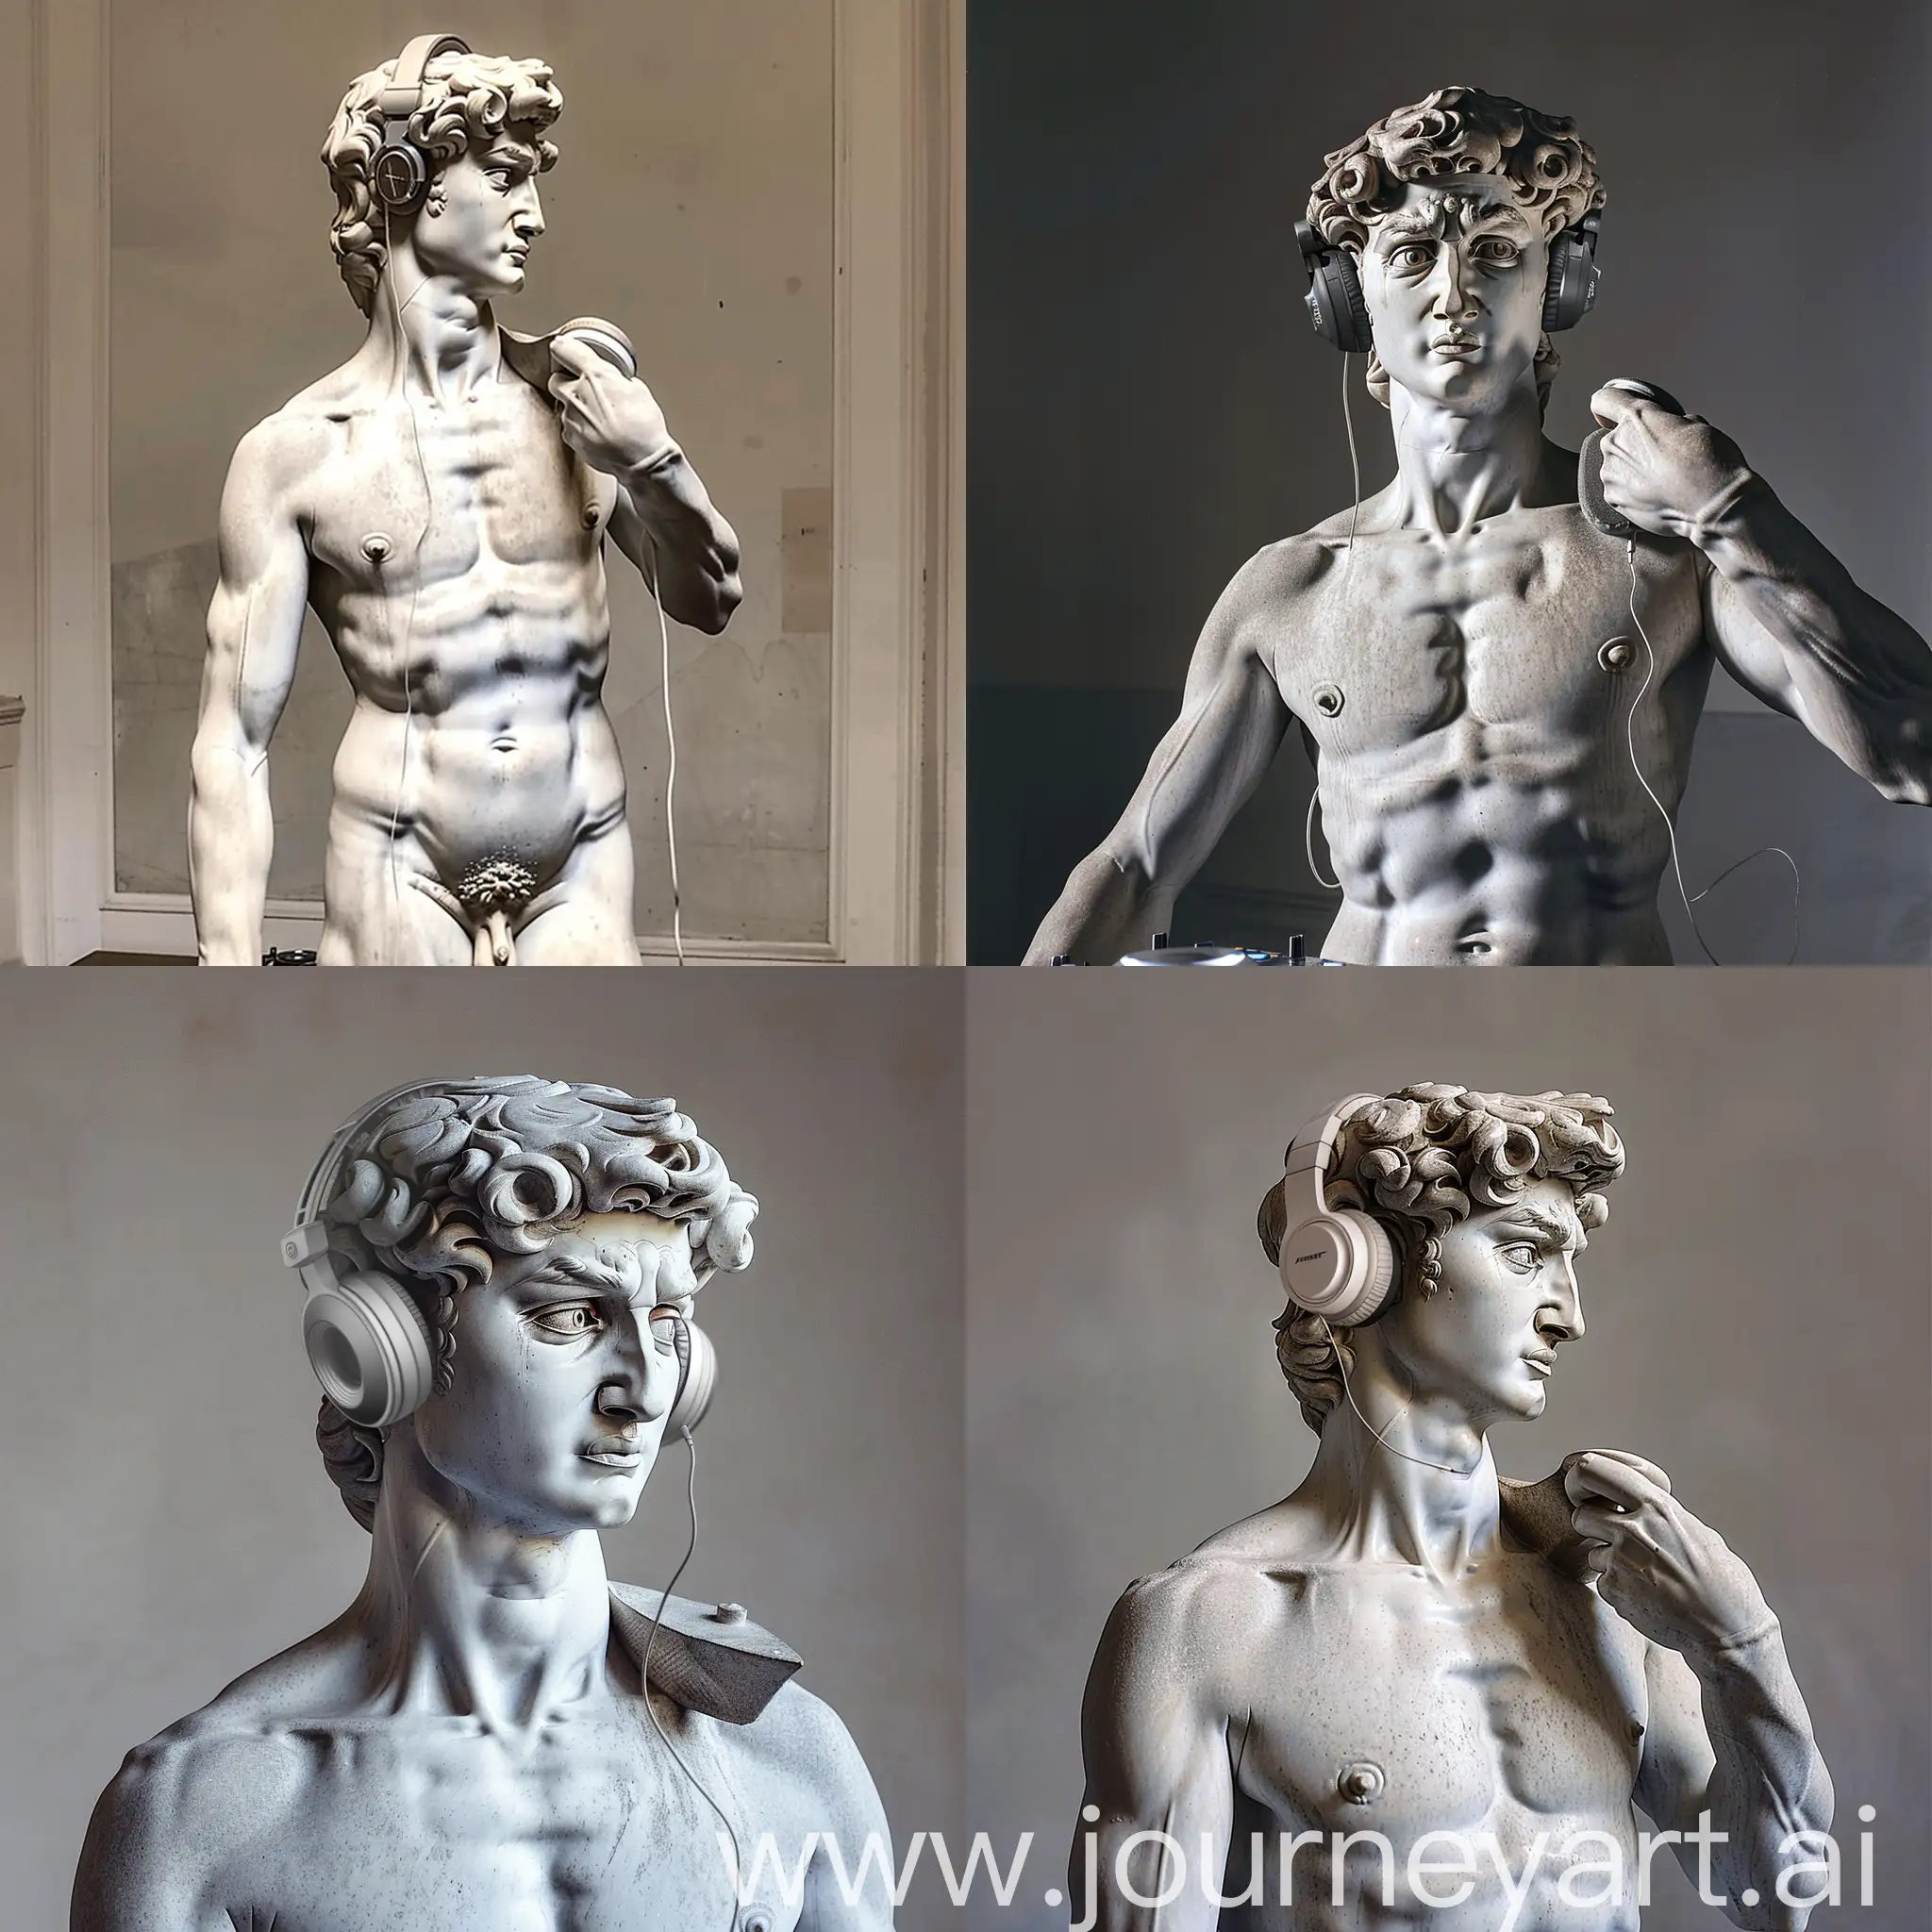 A photo of Michelangelo's sculpture of David wearing headphones djing